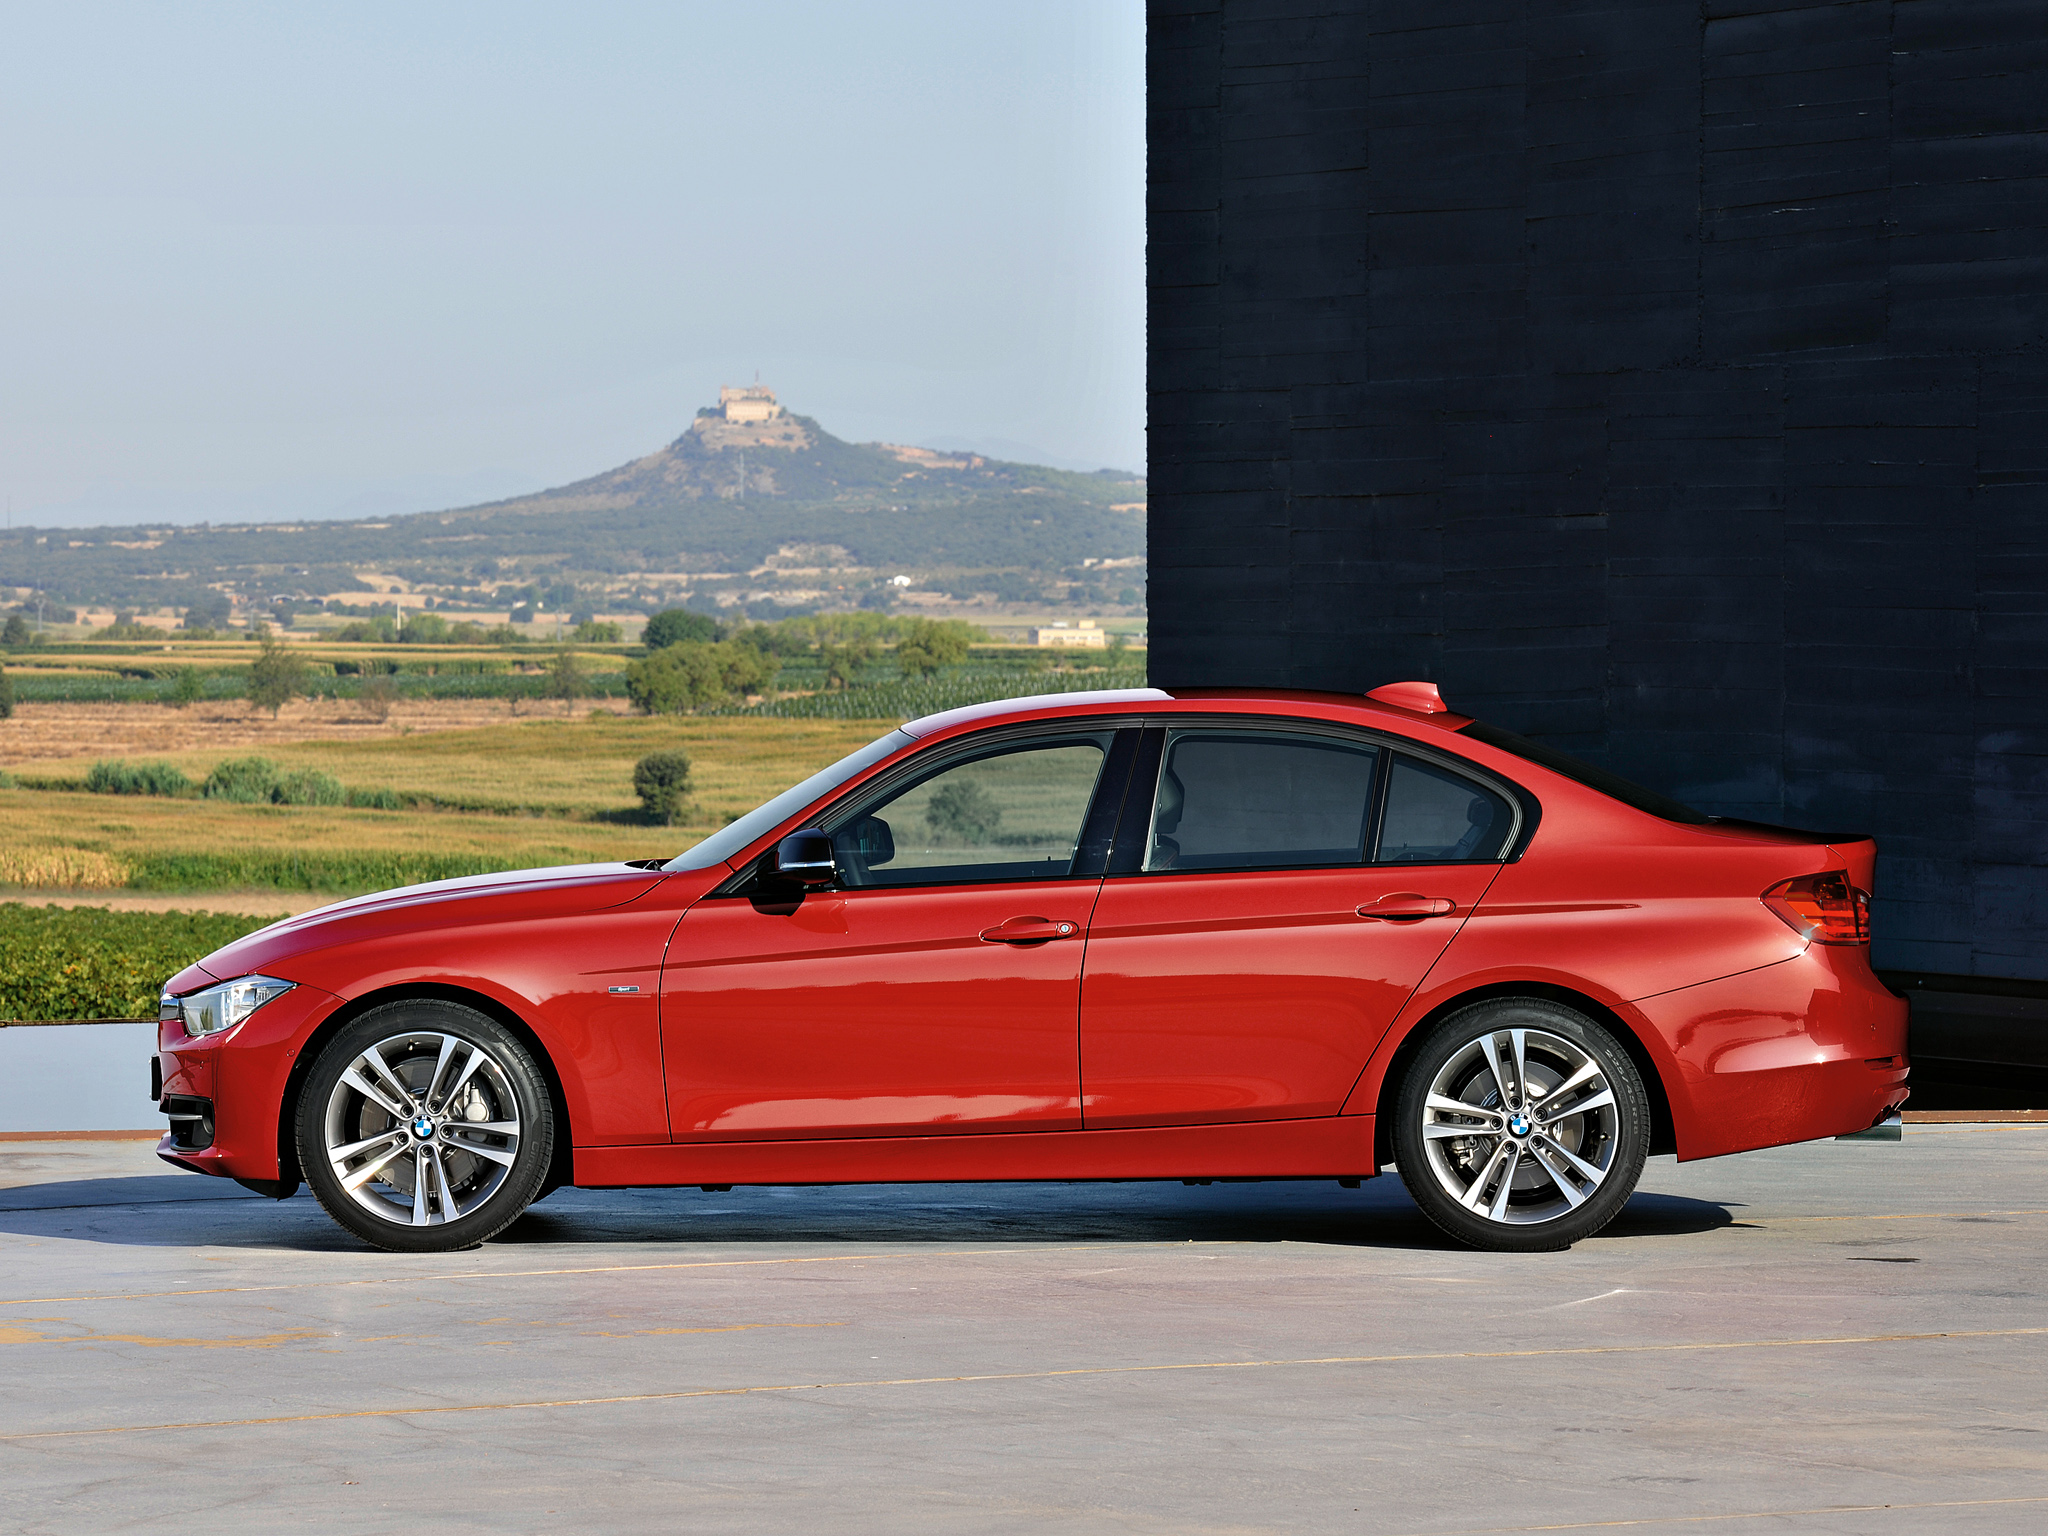  Yeni BMW F30 3 serisi tanıtıldı ! İlk fotoğraflar ve Reklam filmi